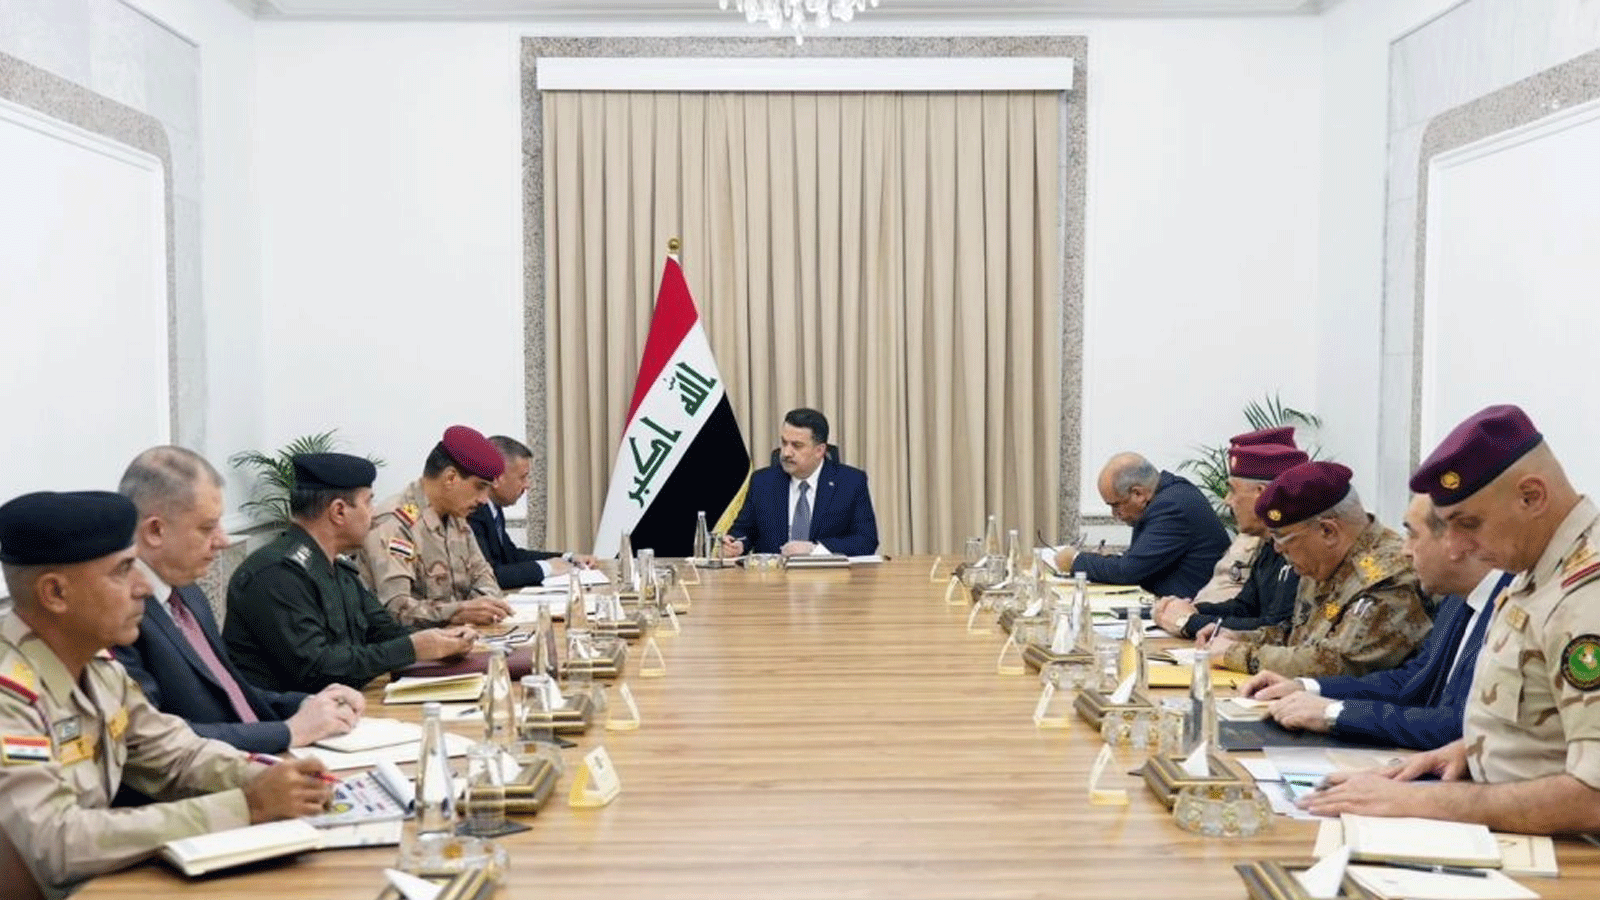 رئيس مجلس الوزراء، القائد العام للقوات المسلحة محمد شياع السوداني، يترأس اجتماعاً أمنياً خاصاً لكبار القادة من التشكيلات الأمنية المختلفة